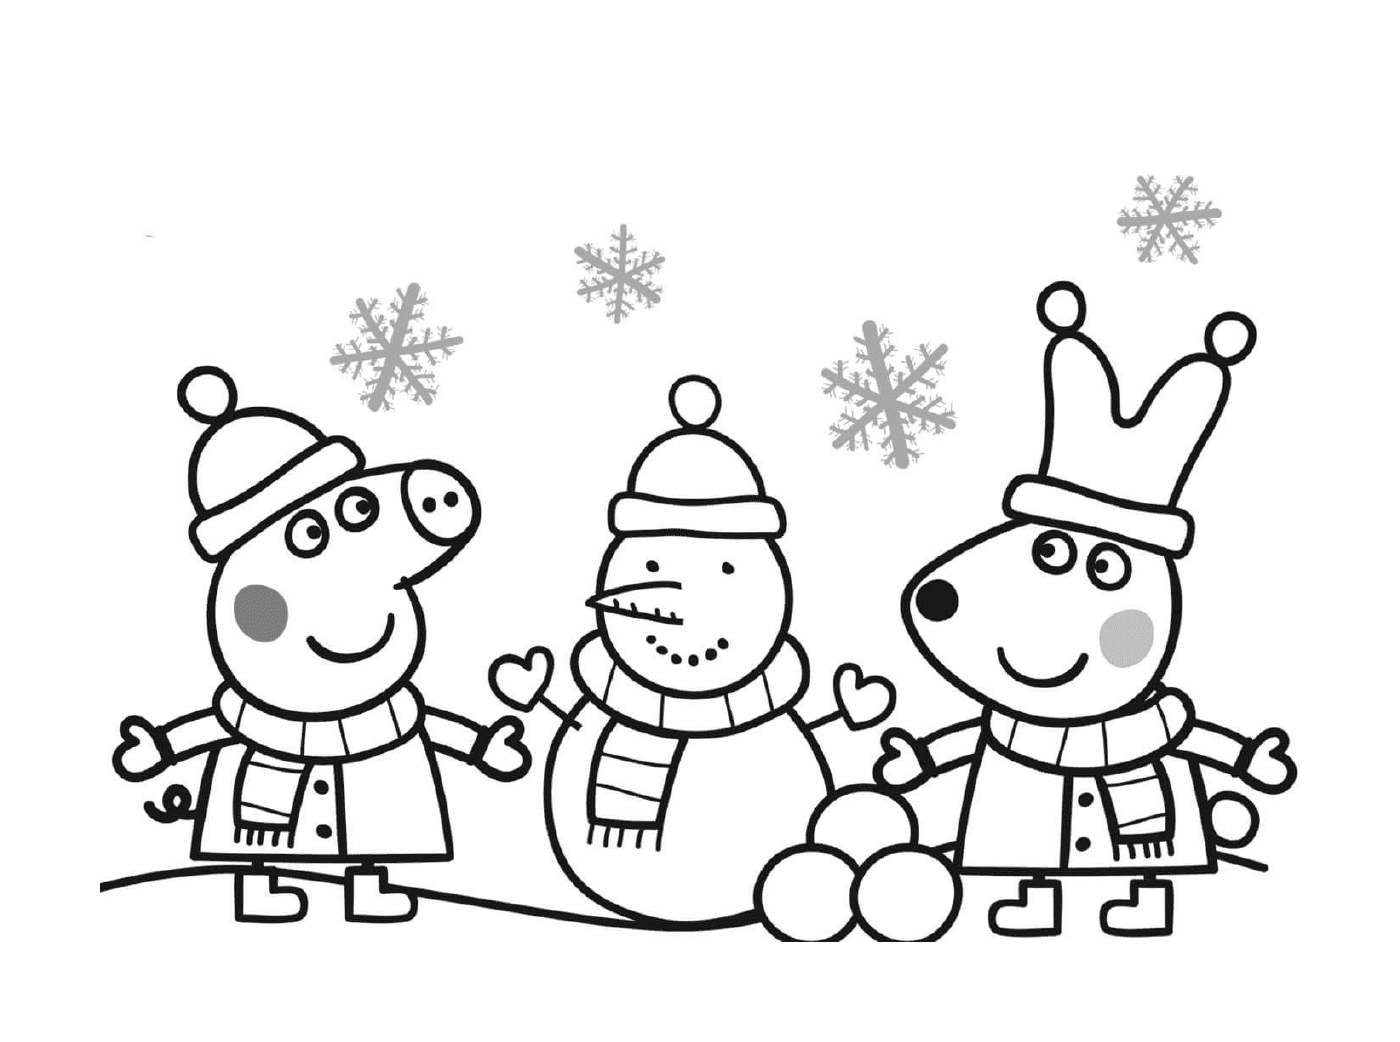  佩帕猪和雪人一起庆祝圣诞节 